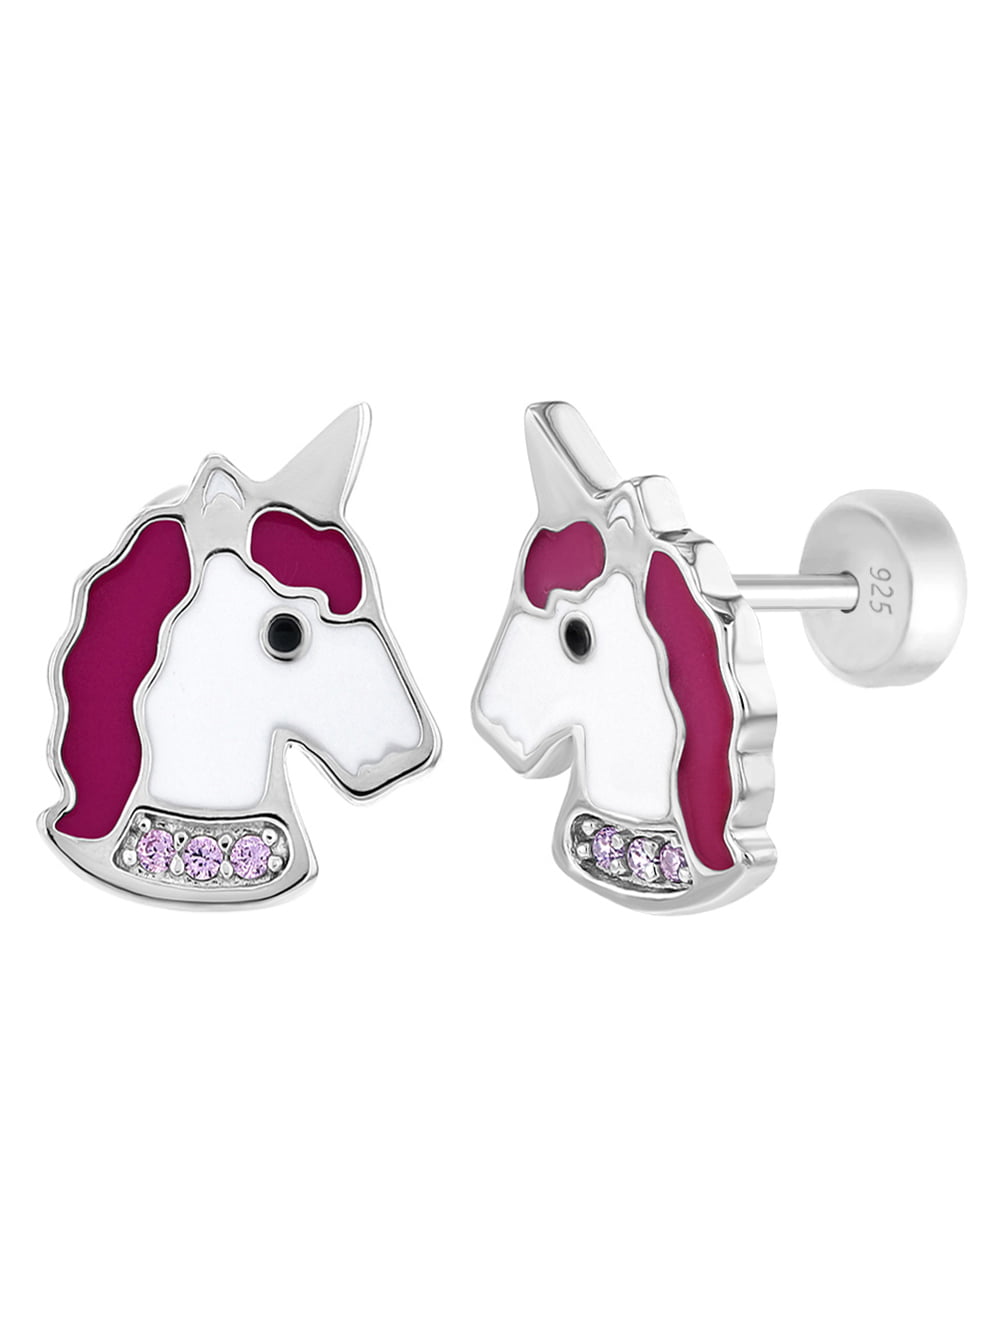 Details about   925 Sterling Silver Cute Dainty Rainbow Mane Unicorn Stud Earrings Girls Women 